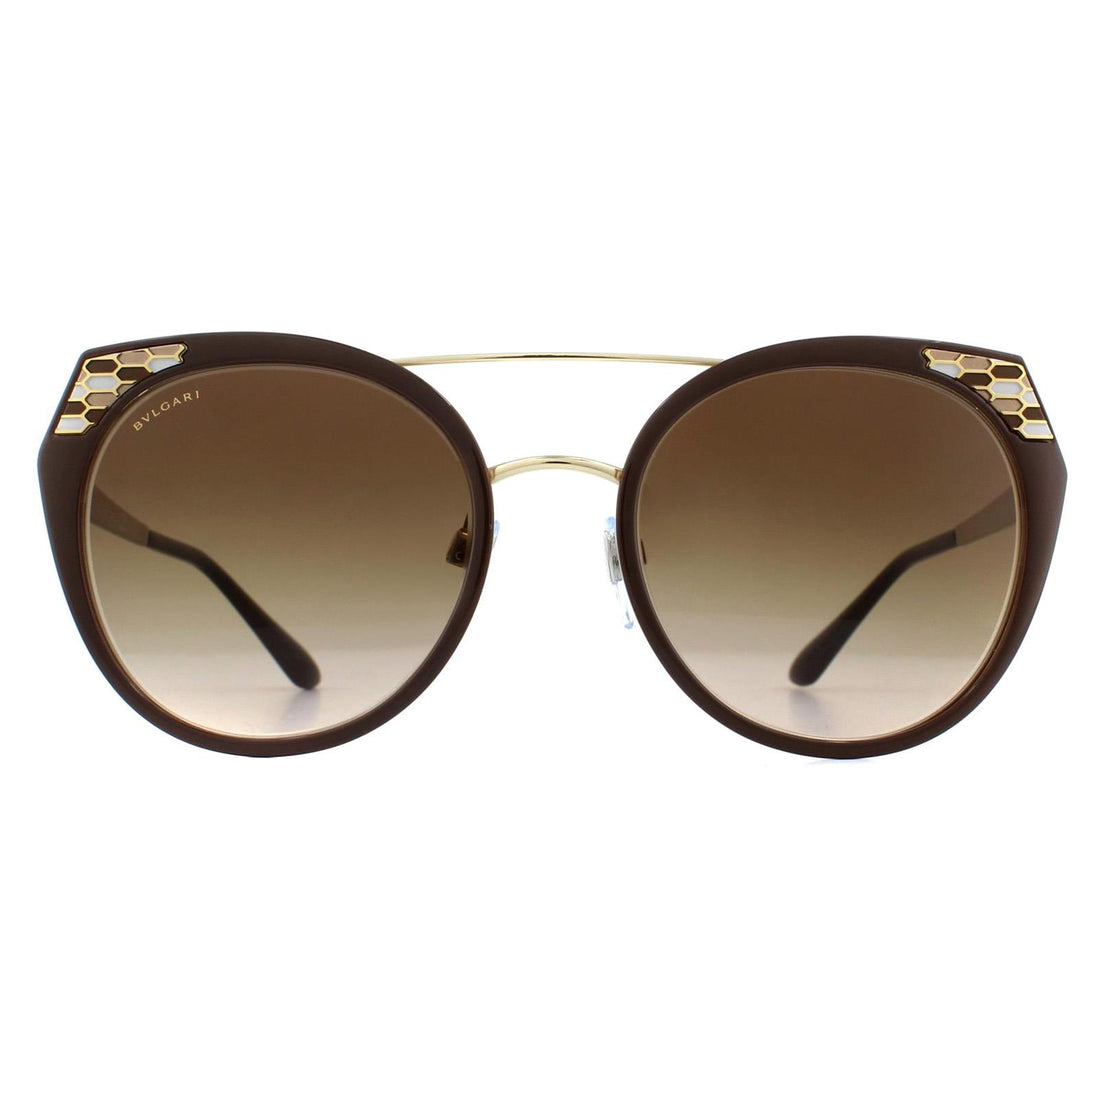 Bvlgari Sunglasses BV6095 203013 Brown Pale Gold Brown Gradient